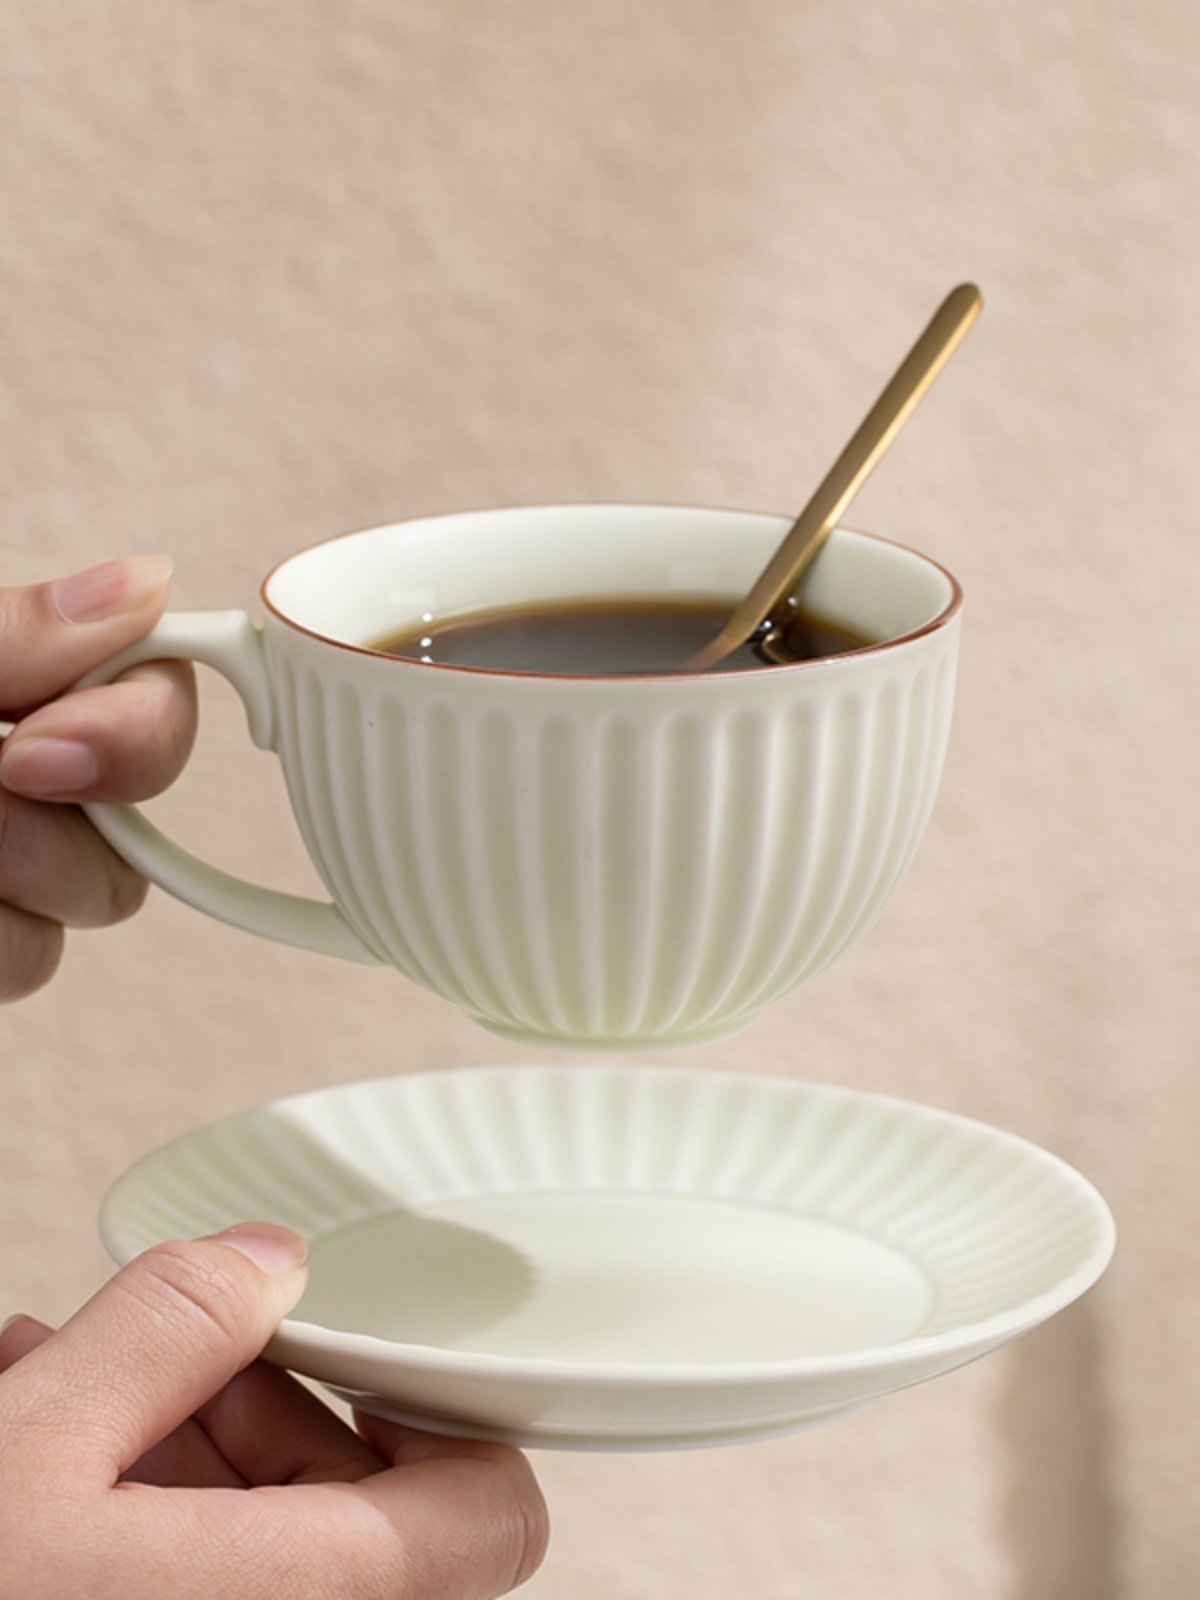 歐式手衝咖啡杯碟陶瓷高檔顏值水杯馬卡龍色北歐風格250ml容量單個包裝